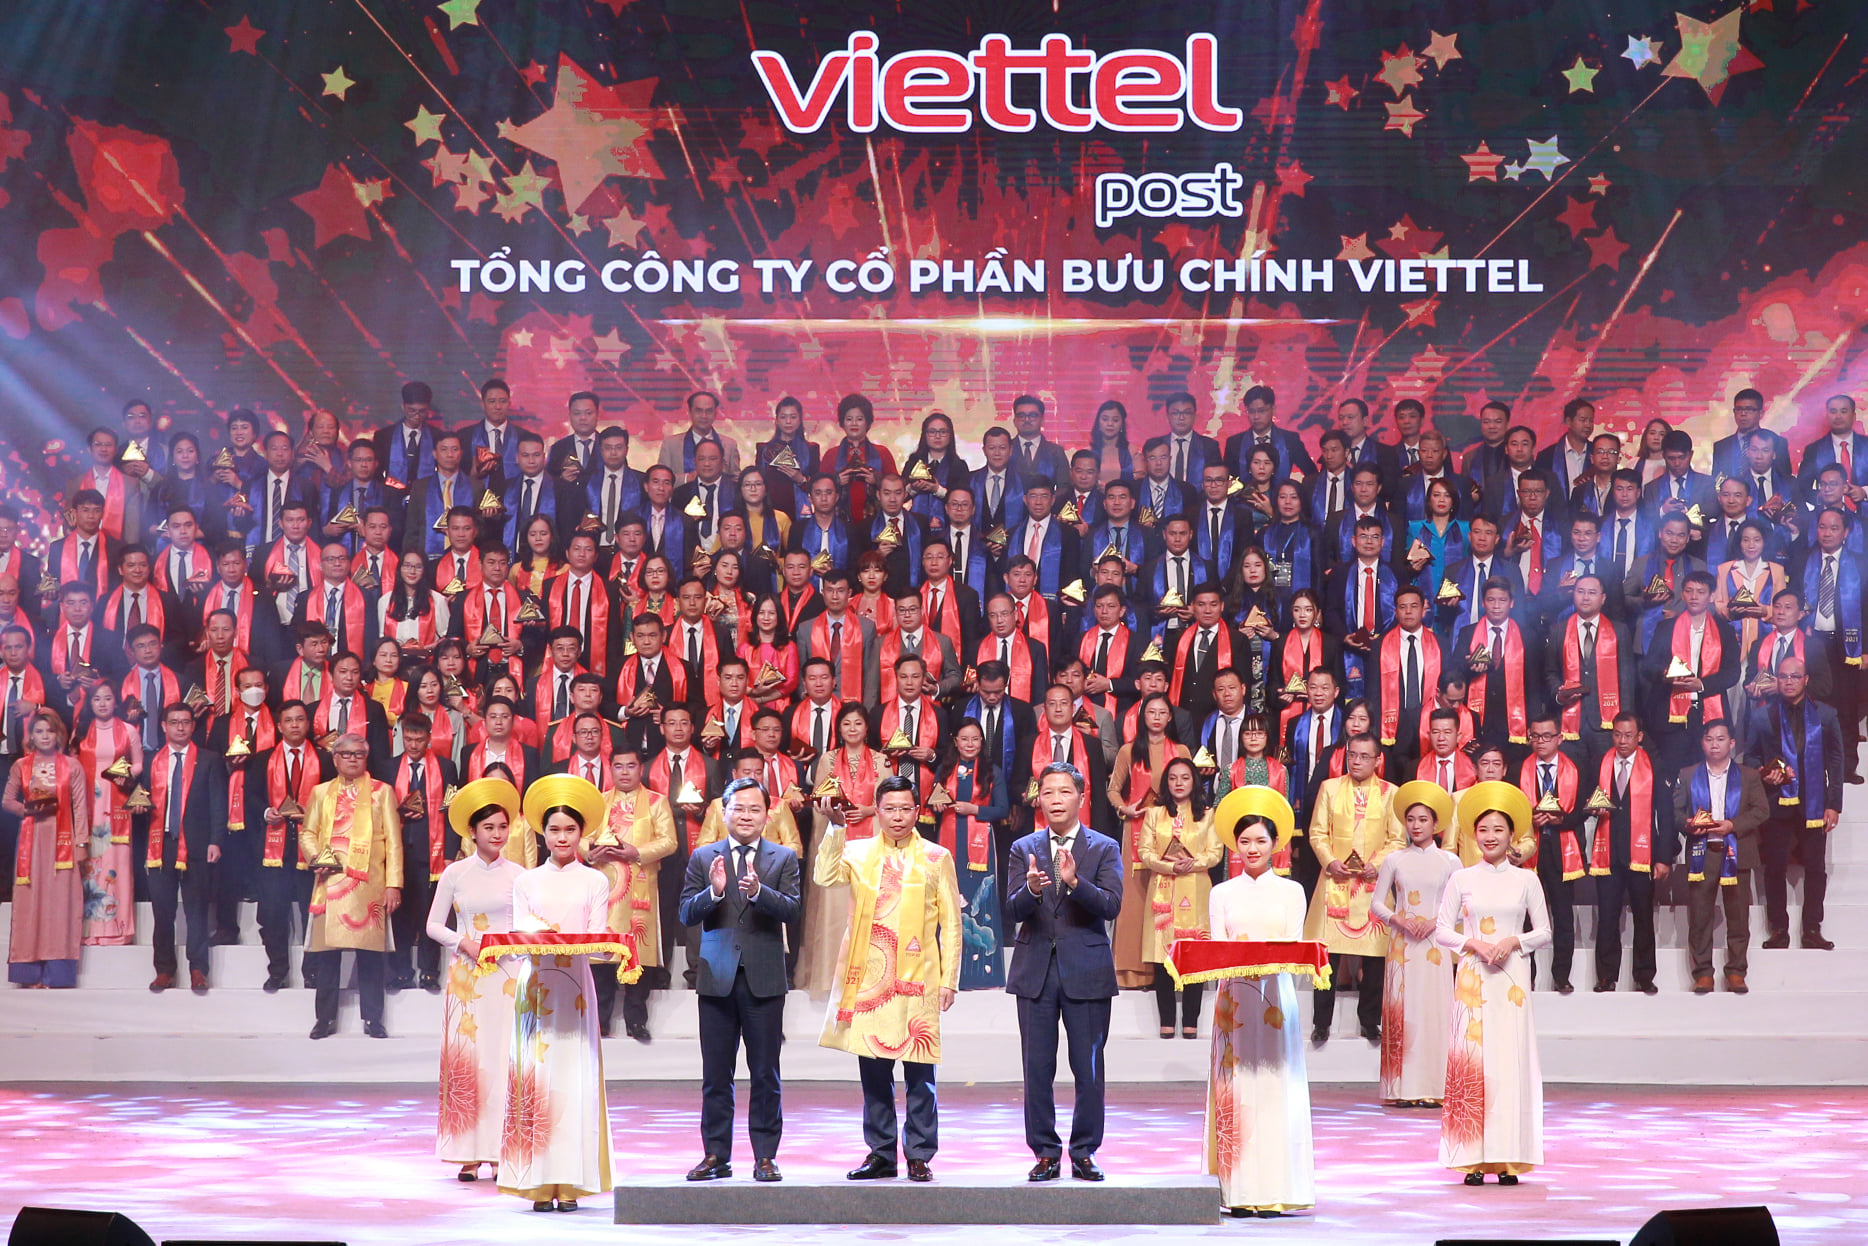 Viettel Post tự hào là một trong những đơn vị hàng đầu Việt Nam trong lĩnh vực chuyển phát, với mạng lưới rộng khắp 63 tỉnh thành, 2.200 bưu cục, 125.000 điểm cung cấp dịch vụ. Viettel Post phấn đấu trở thành doanh nghiêp logistics số 1 tại Việt Nam dựa trên nền tảng công nghệ cao.